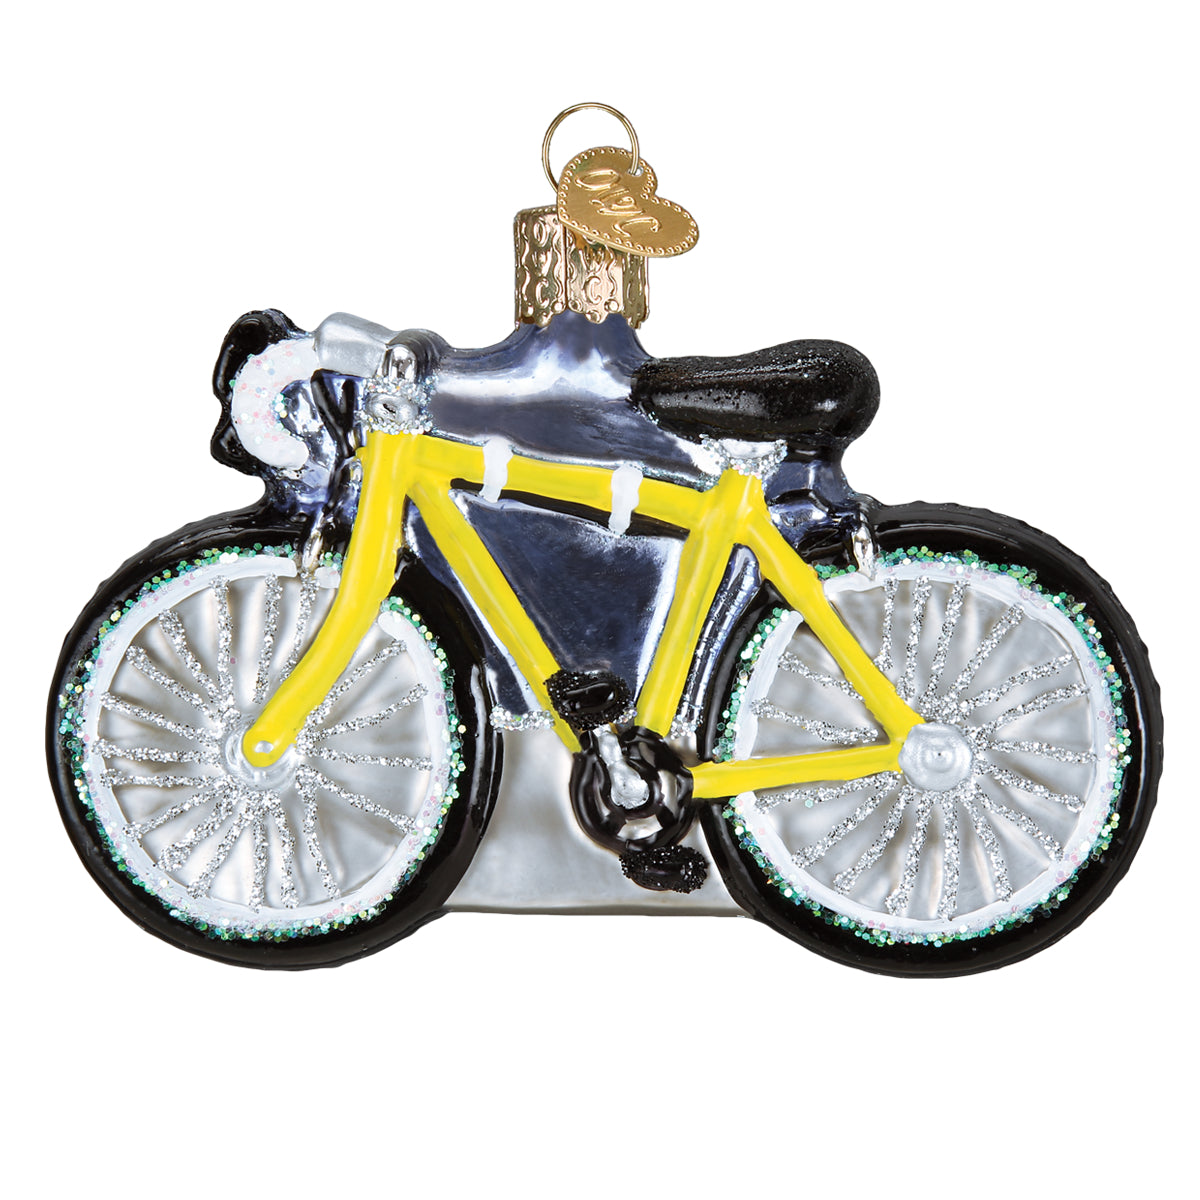 Road Bike Ornament